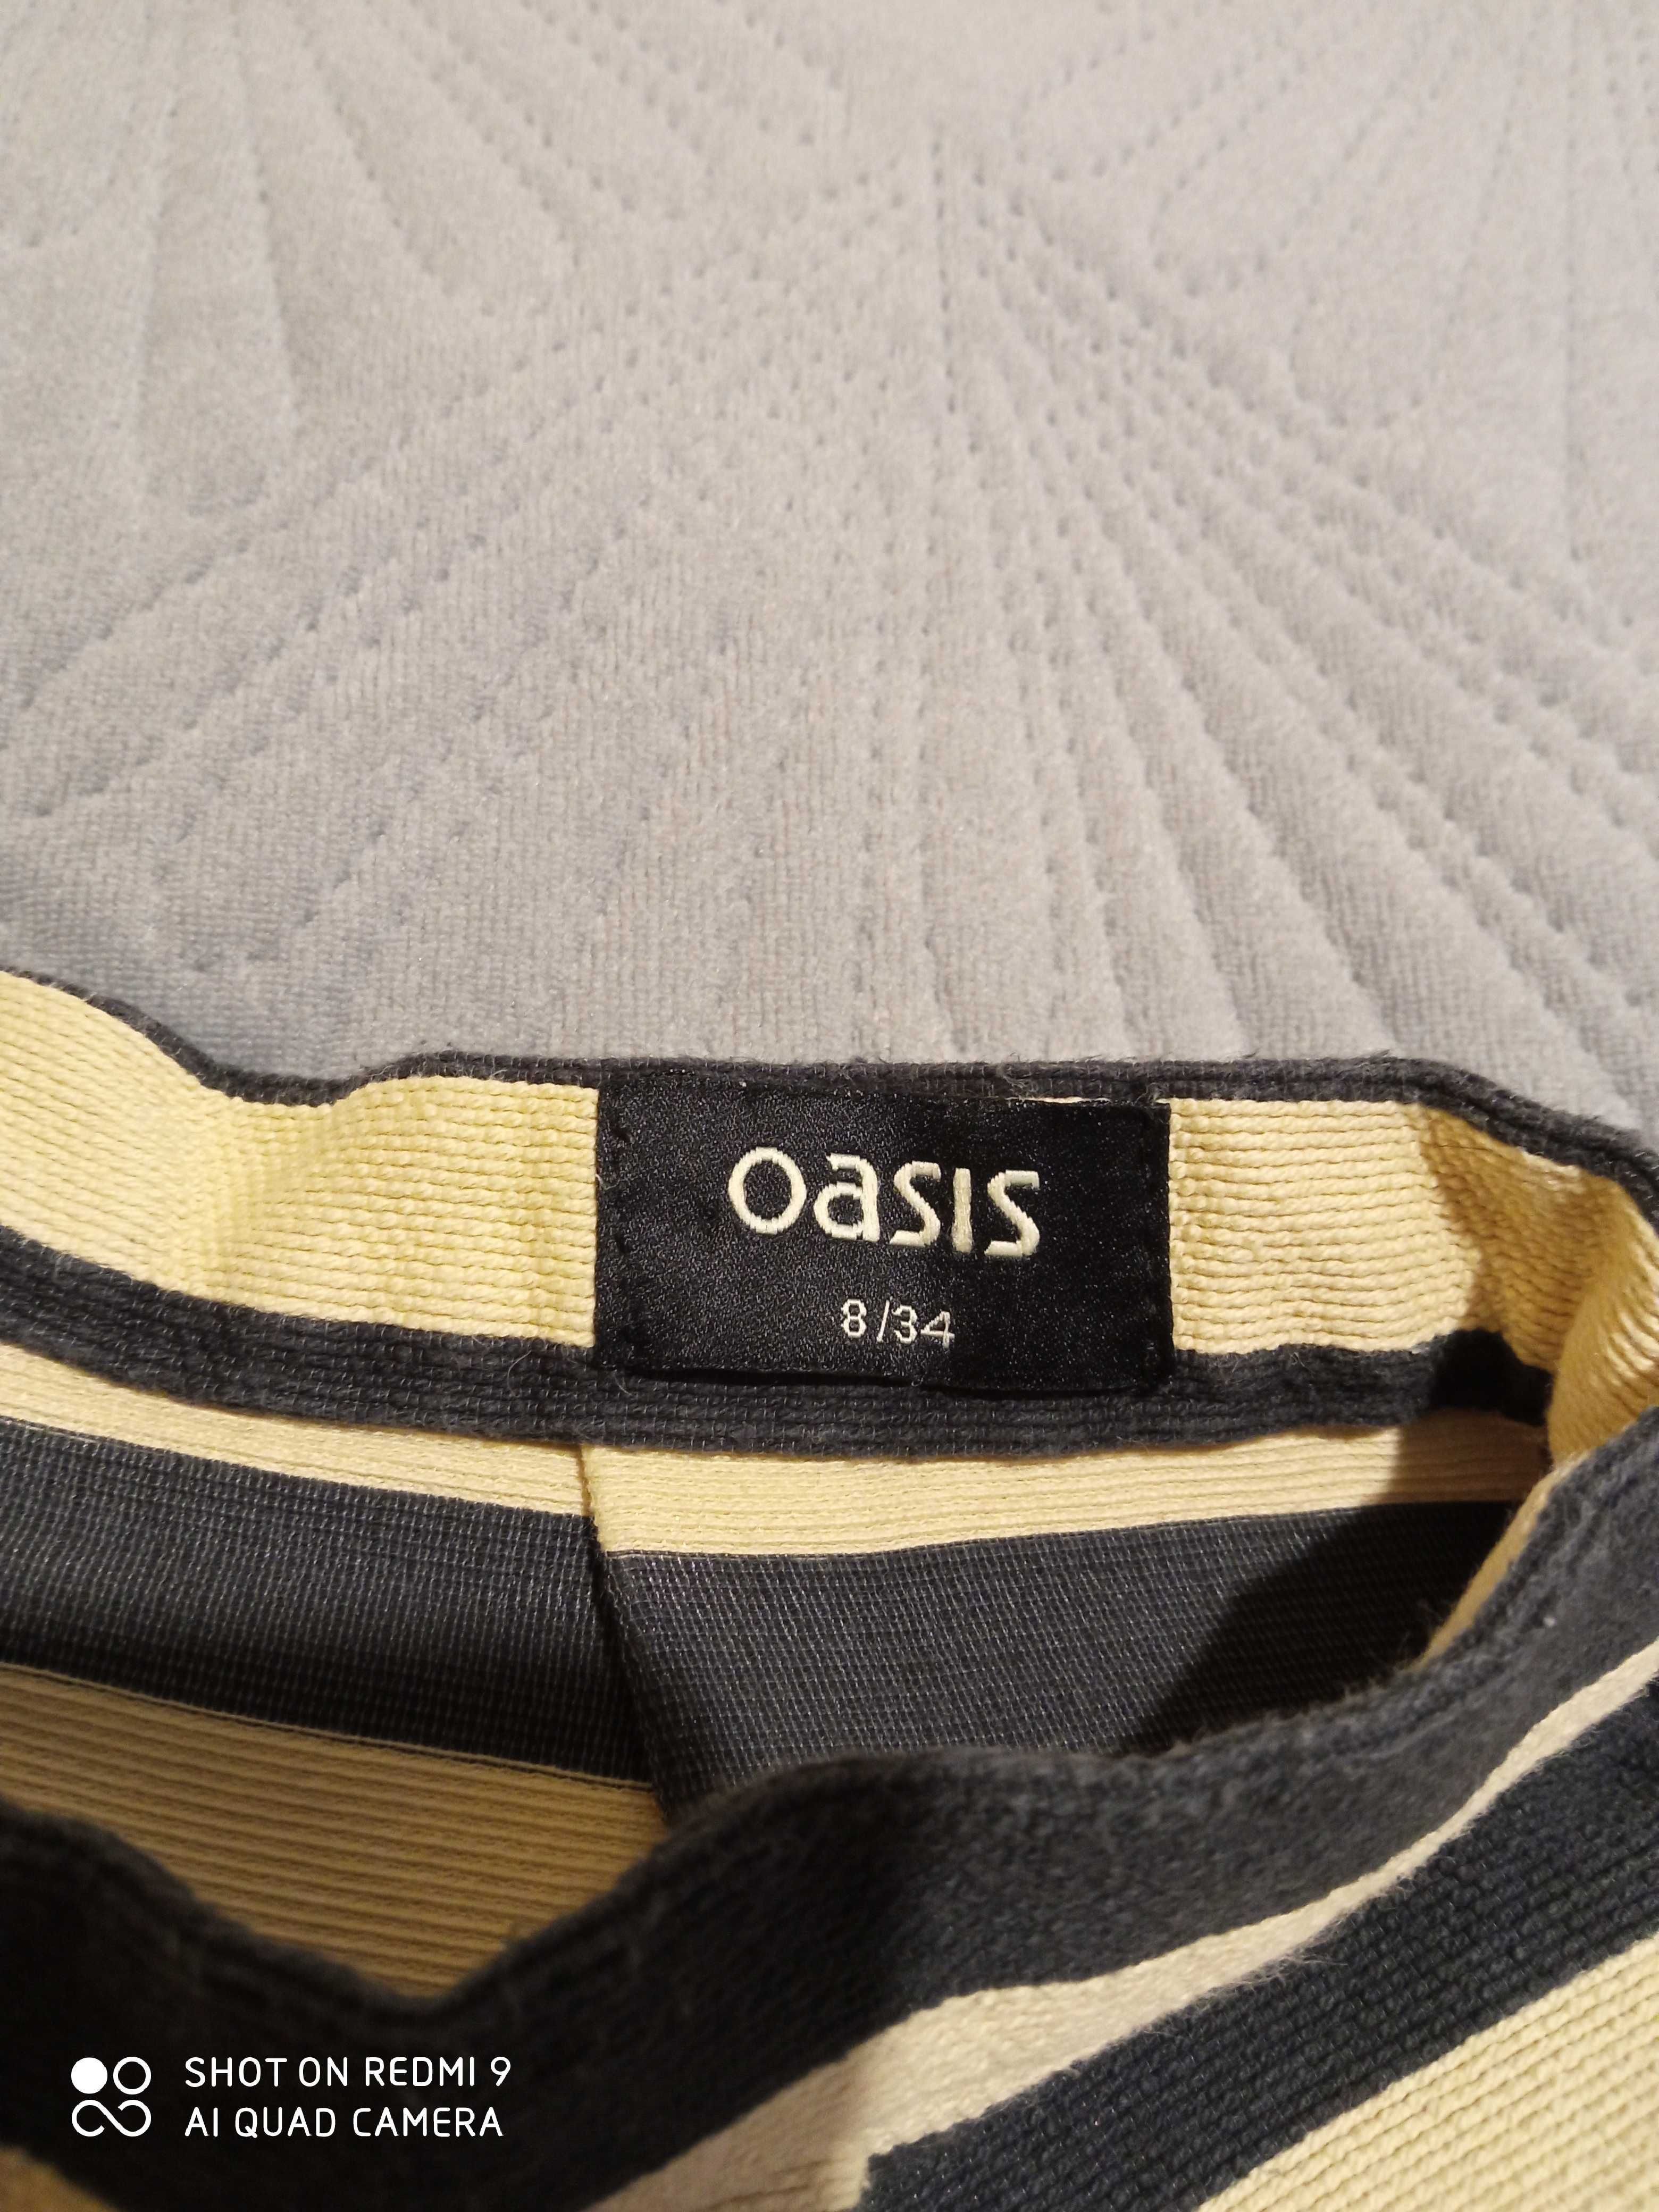 Spódnica Oasis rozm. 34 Stan idealny